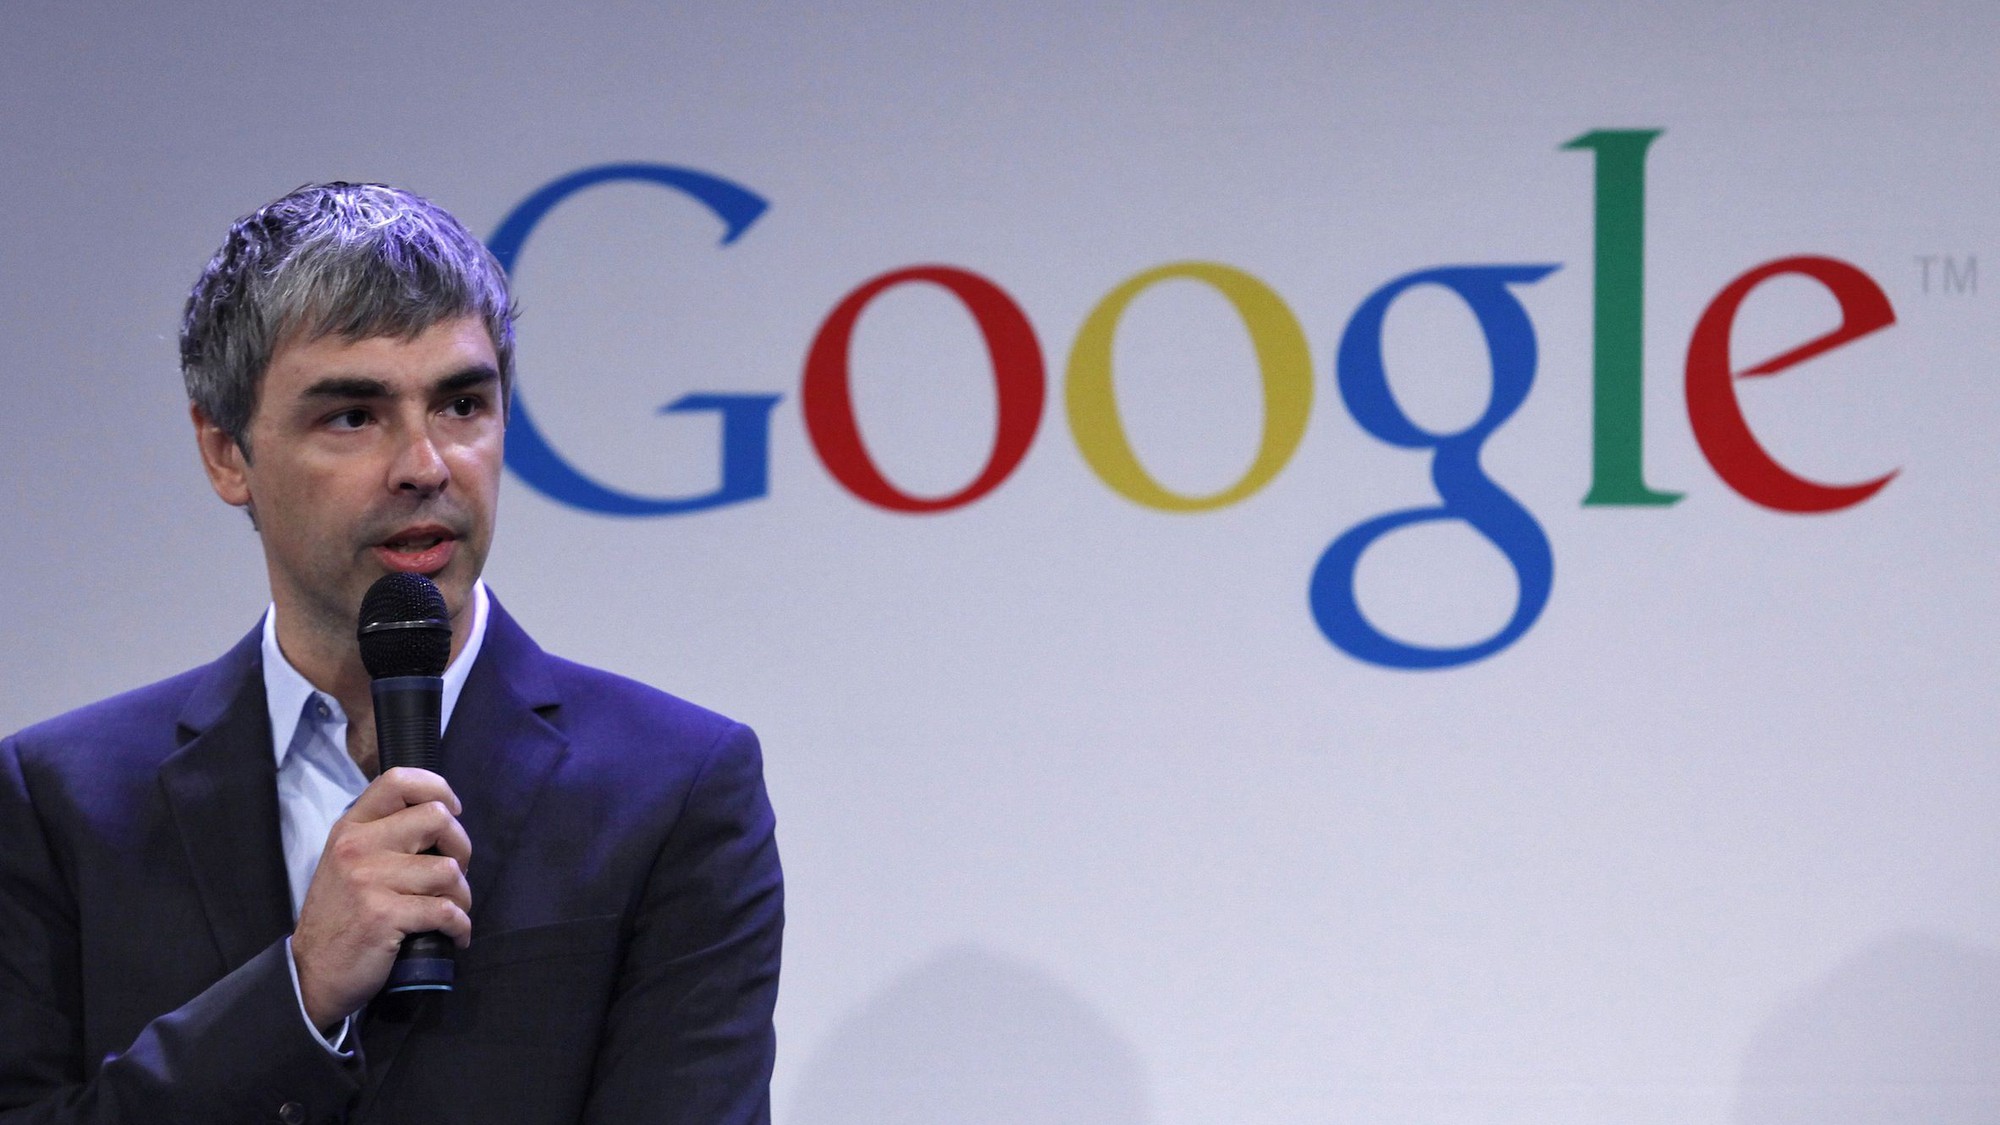 Larry Page đồng sáng lập Google cùng Sergey Brin vào năm 1998. Hiện ông là CEO của Alphabet, công ty mẹ của Google. Tỷ phú 44 tuổi này hiện sở hữu khối tài sản 51,5 tỷ USD.